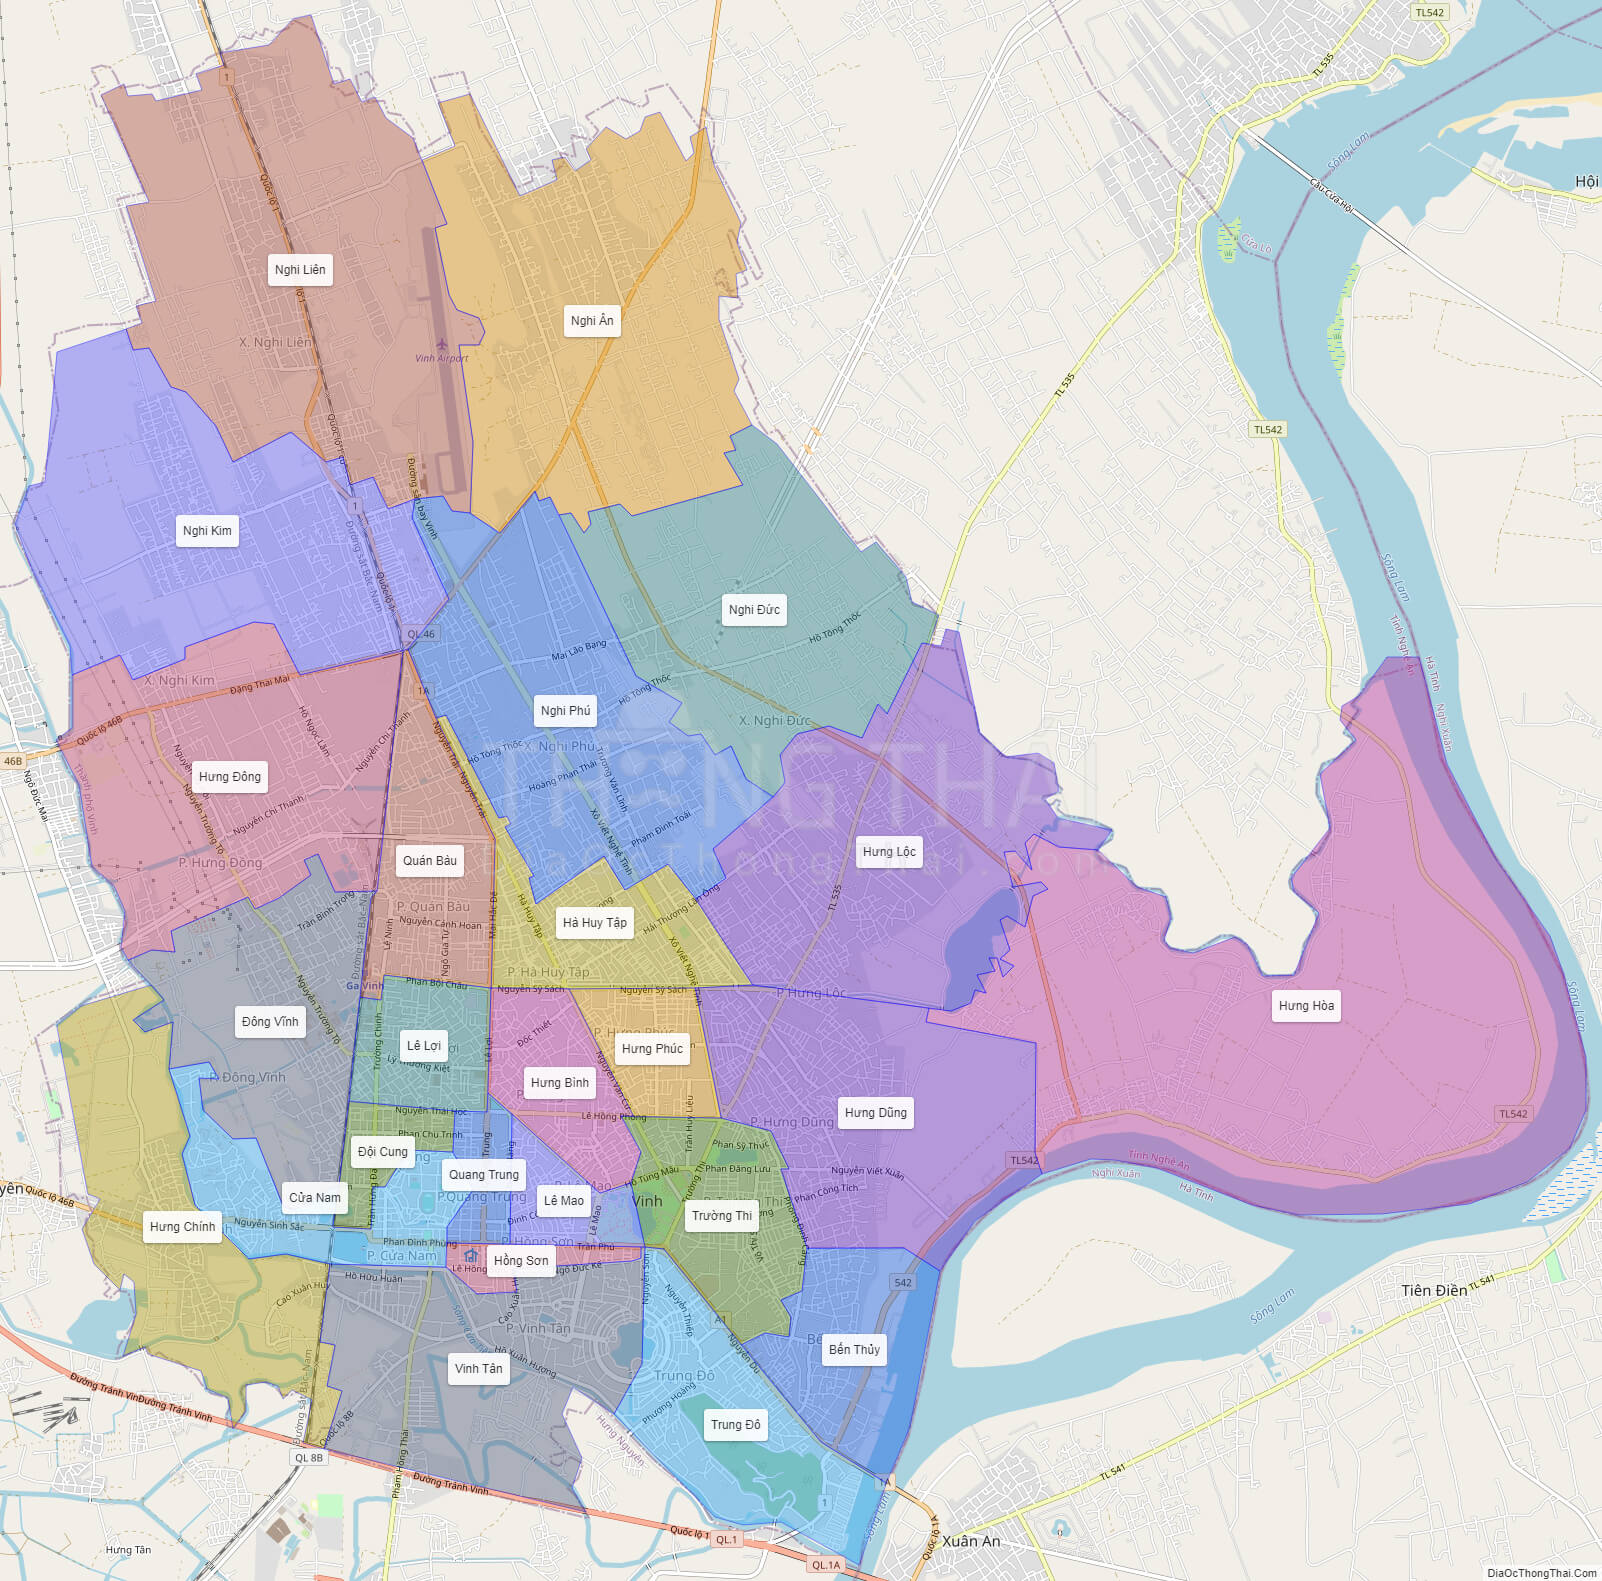 Khám phá bản đồ thành phố vinh nghệ an Với thông tin chi tiết và chính xác